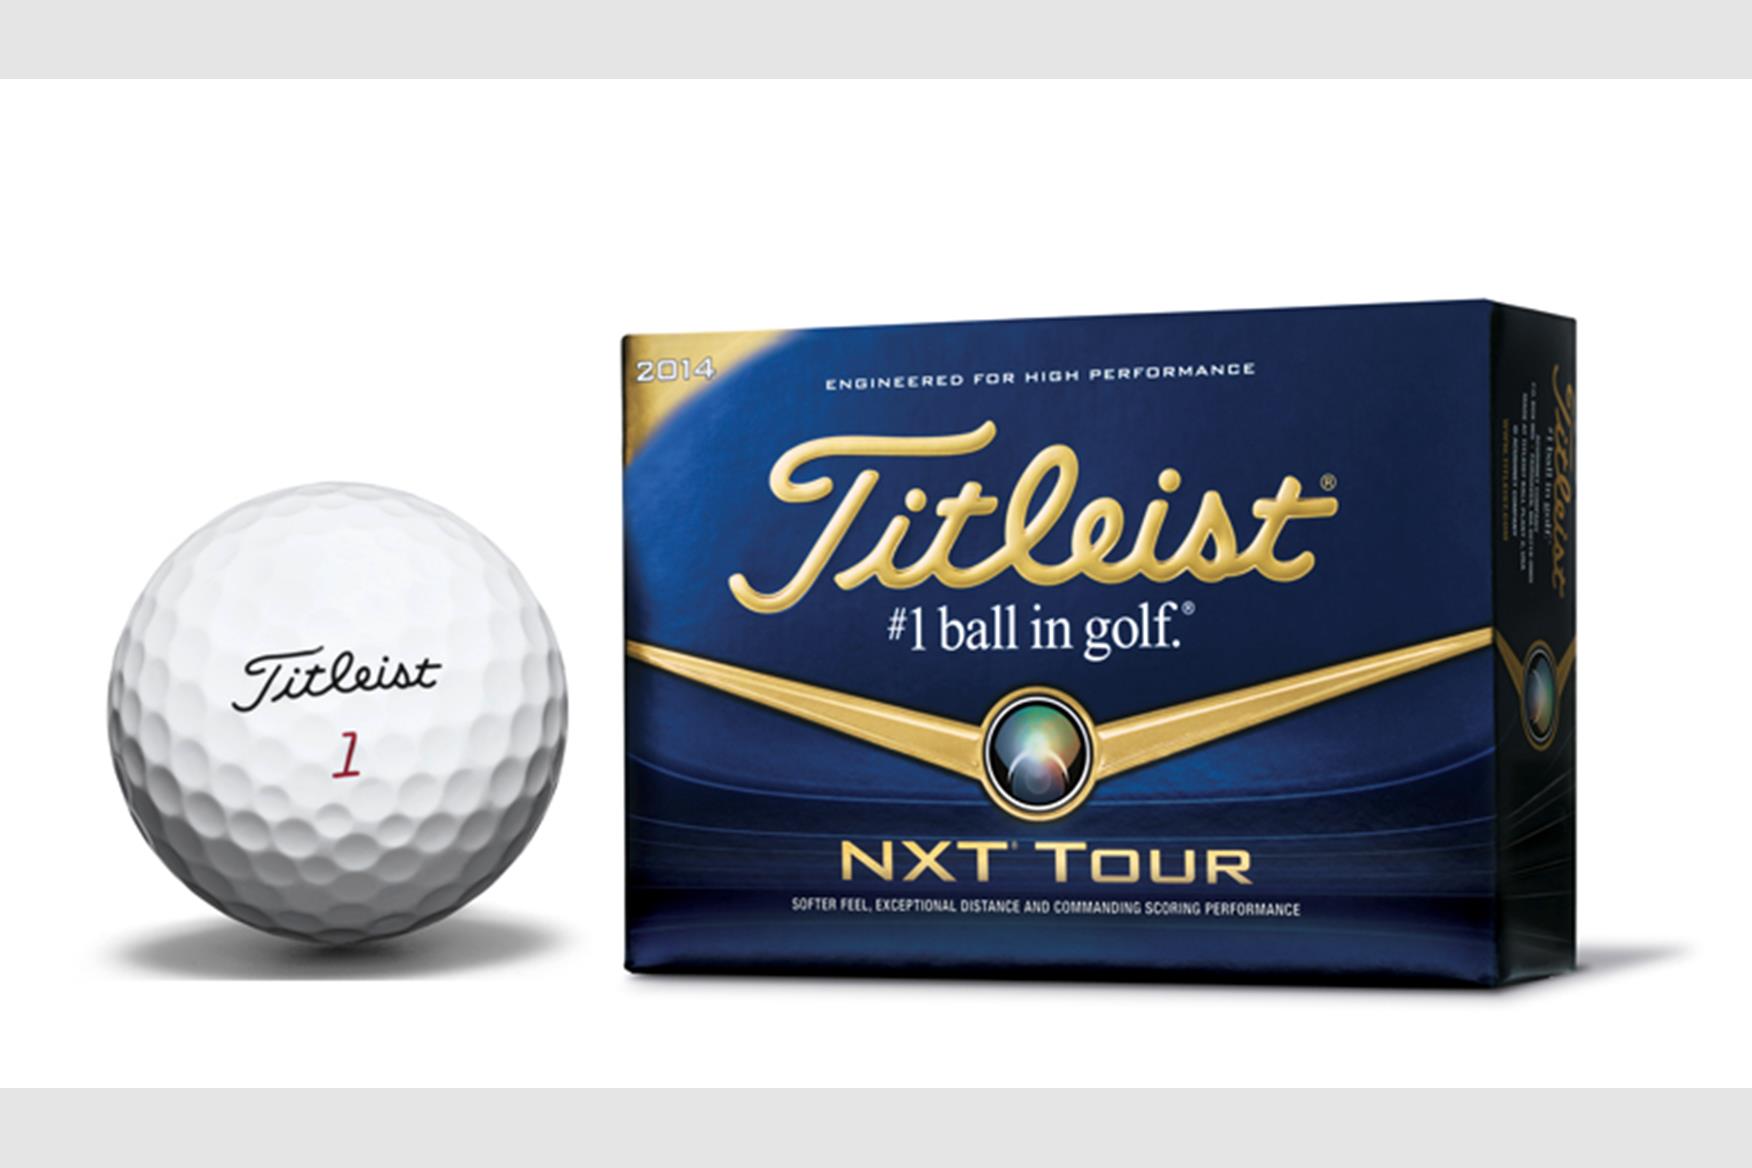 nxt tour golf balls review